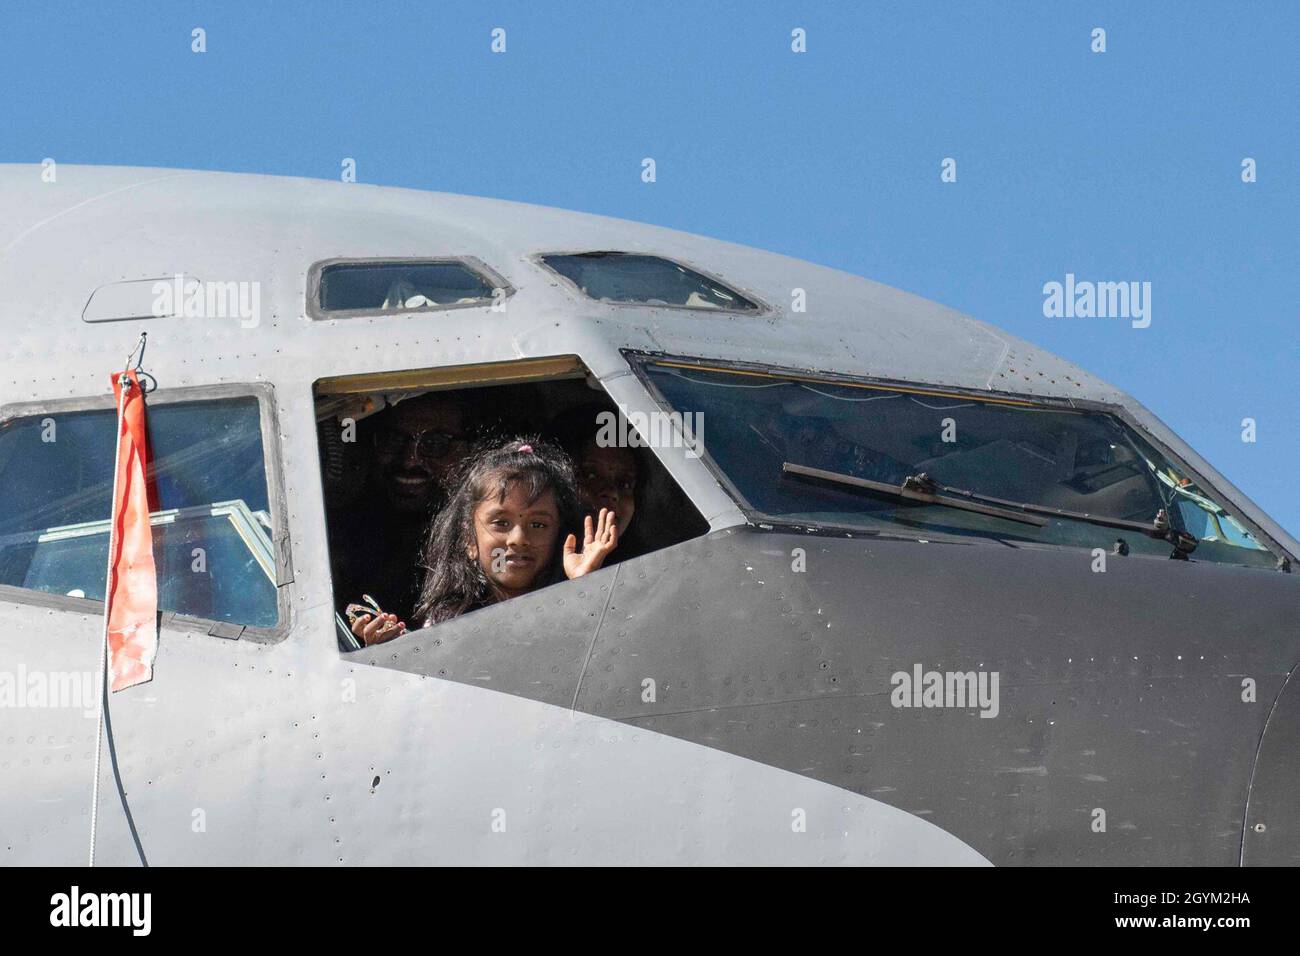 Una giovane ragazza che partecipa al Aerospace and Aviation Day guarda la finestra di un KC-135 Stratotanker assegnato alla 97a Air Mobility Wing, Altus Air Force base, Okla., 25 gennaio 2020, presso l'aeroporto internazionale di Orlando Sanford, Fl. partecipando a questo evento, i giovani aviatori hanno avuto l'opportunità unica nella vita di esplorare le possibilità di una carriera nel settore dell'aviazione. (STATI UNITI Air Force foto di Airman 1° classe Breanna Klemm) Foto Stock